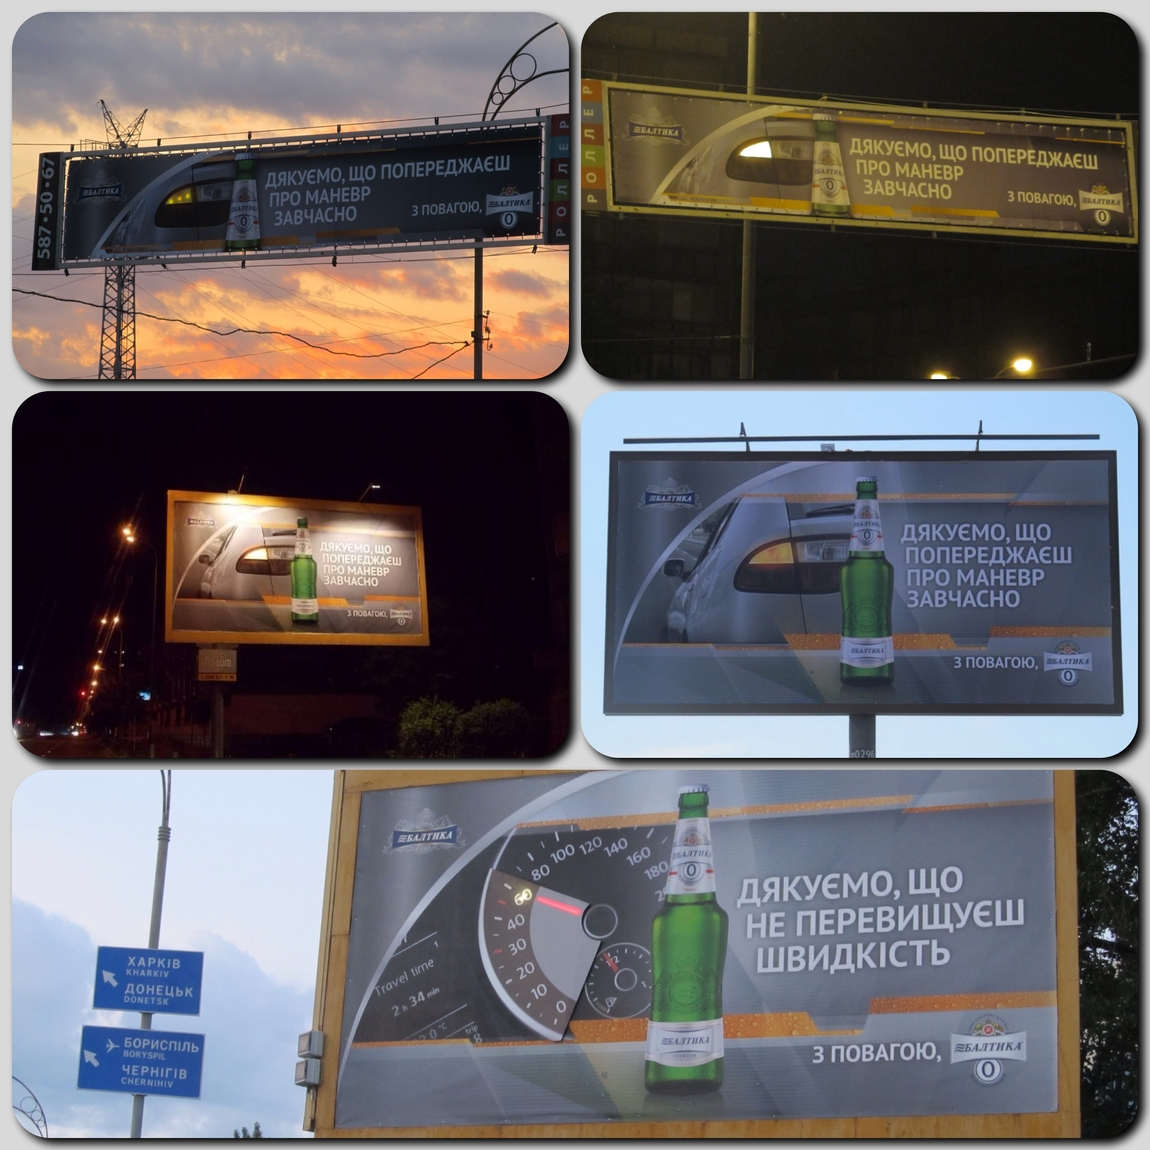 Нестандартную рекламу, привлекающую внимание автомобилистов, можно наблюдать в крупнейших городах Украины: Киеве, Харькове, Львове и Донецке.